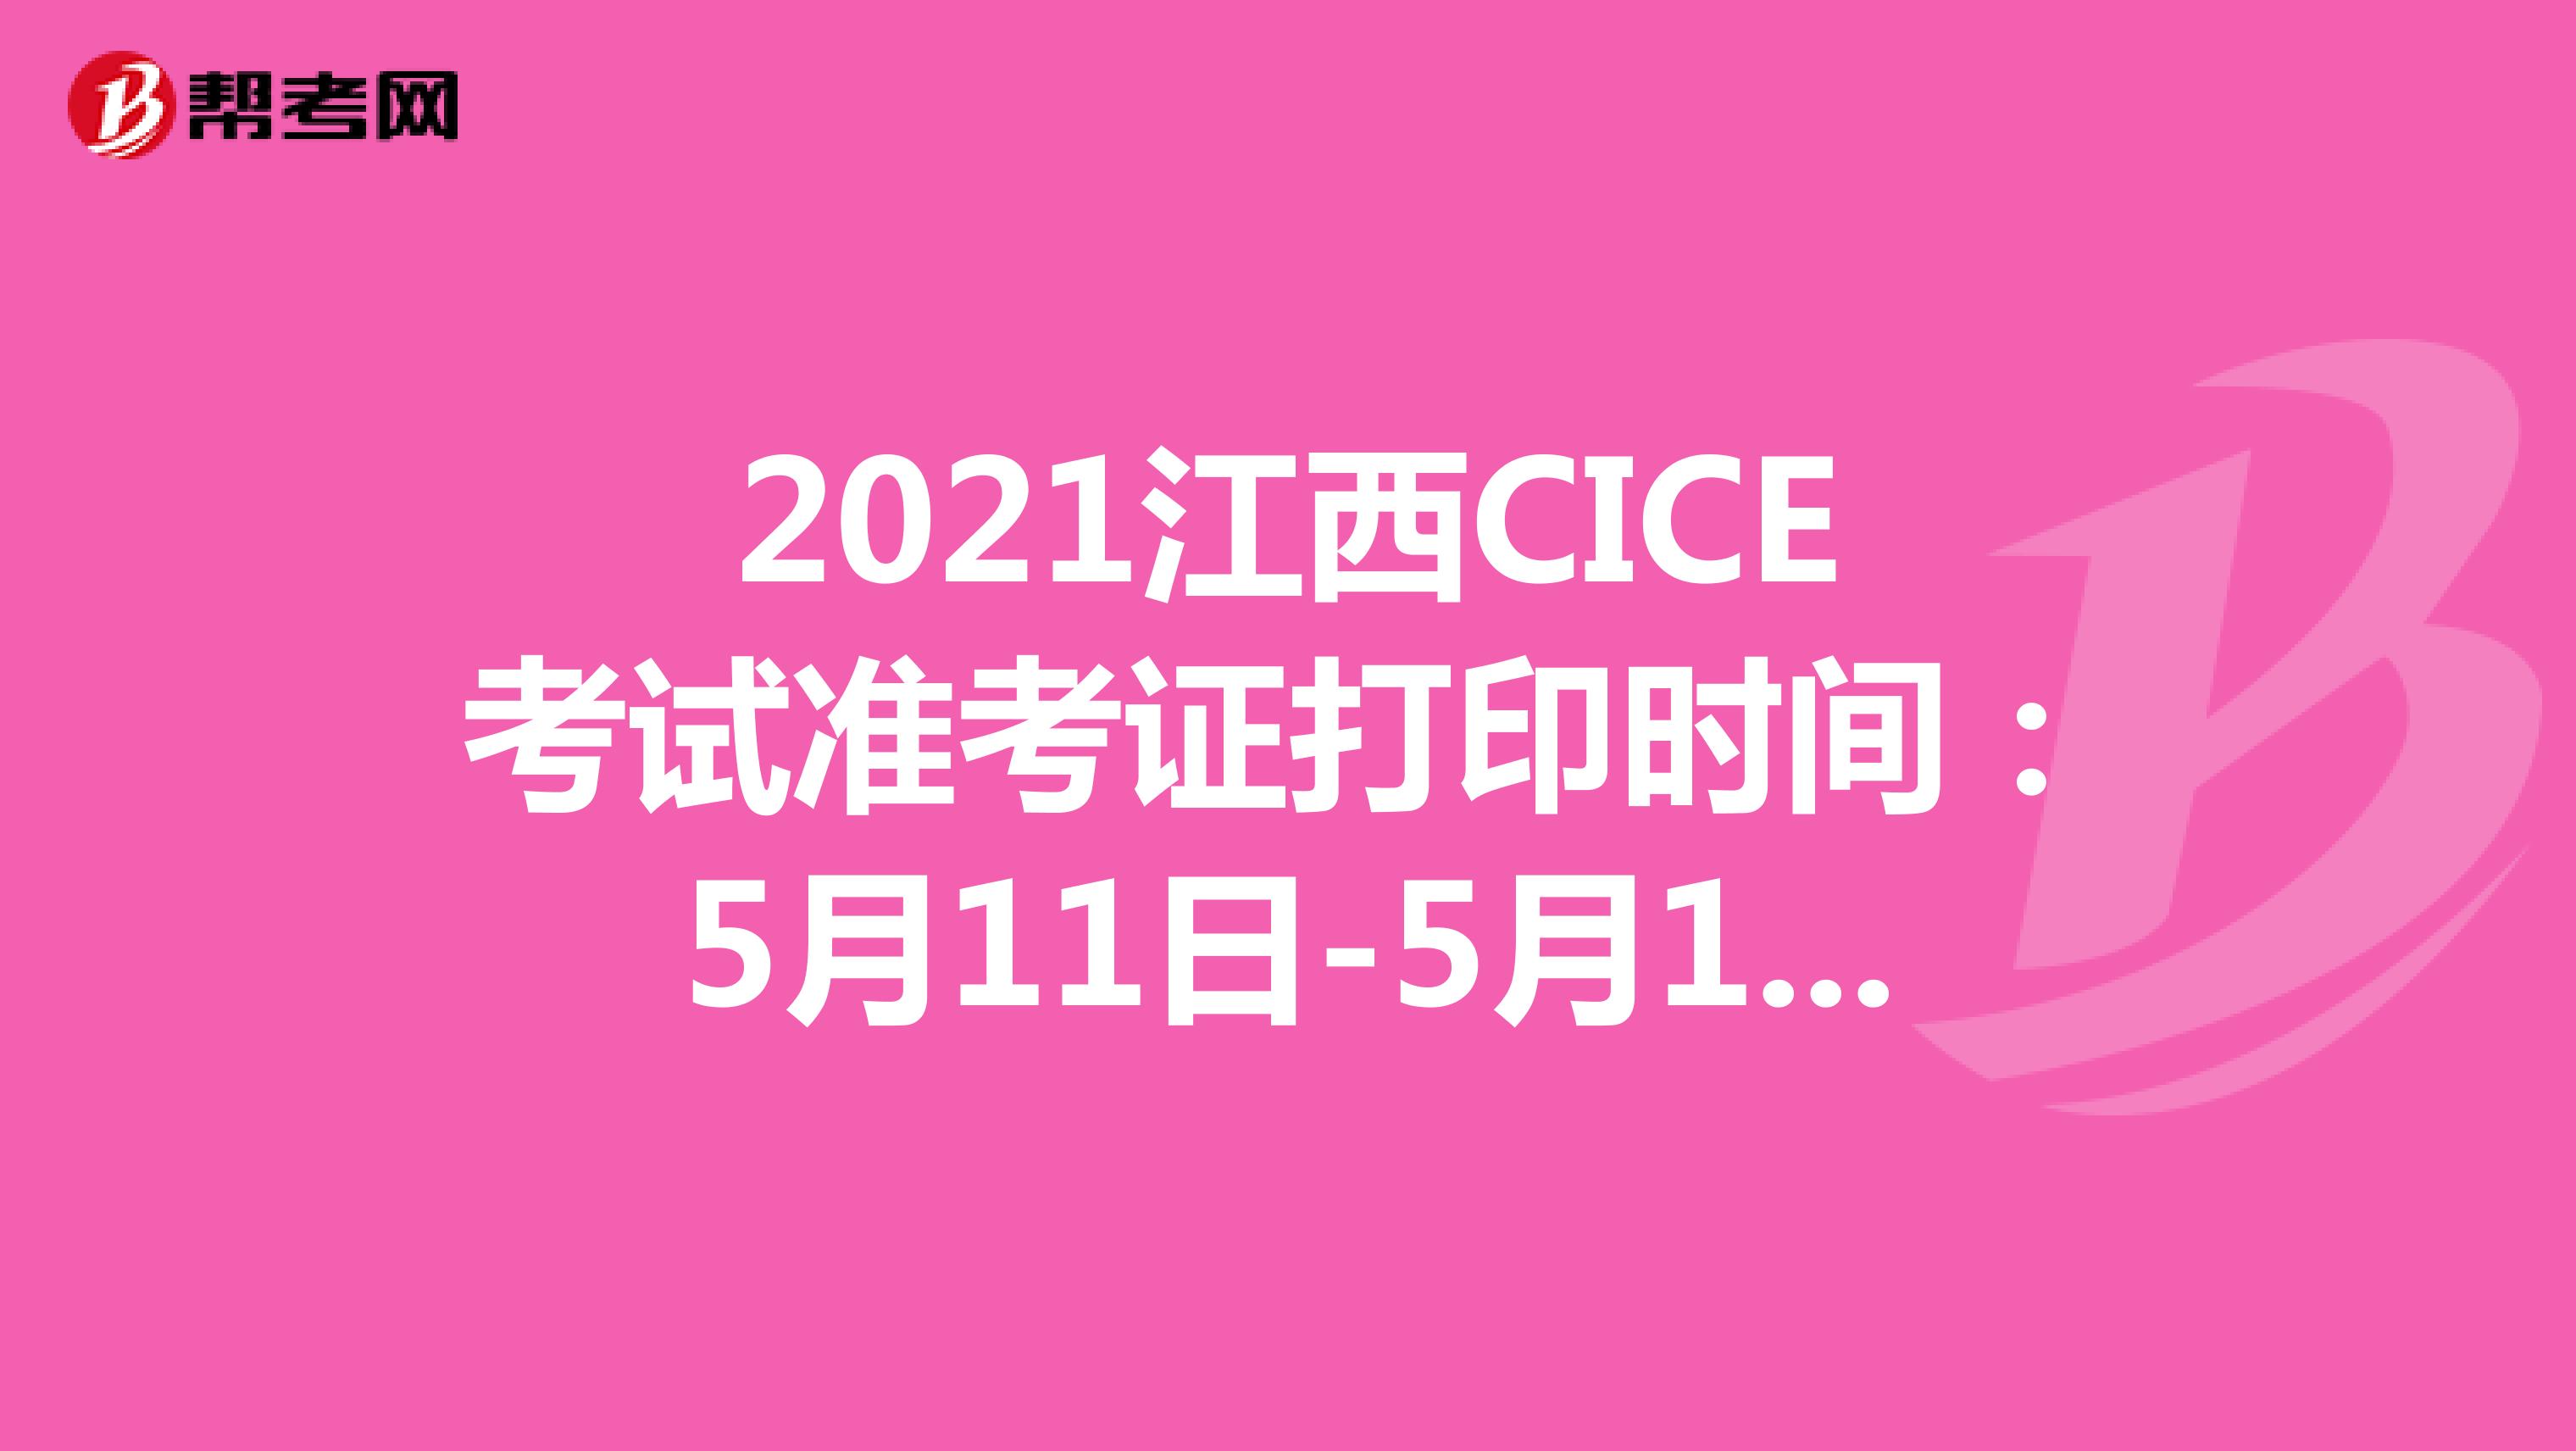 2021江西CICE考试准考证打印时间：5月11日-5月14日